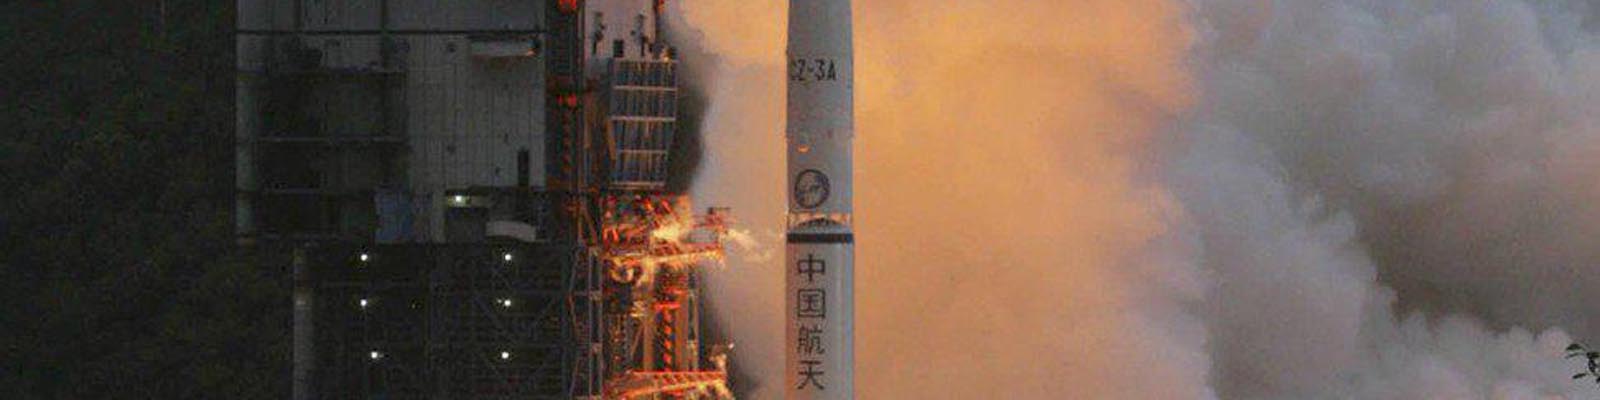 Lancement de la sonde Chang'e 1 par la fusée Chang-Zheng